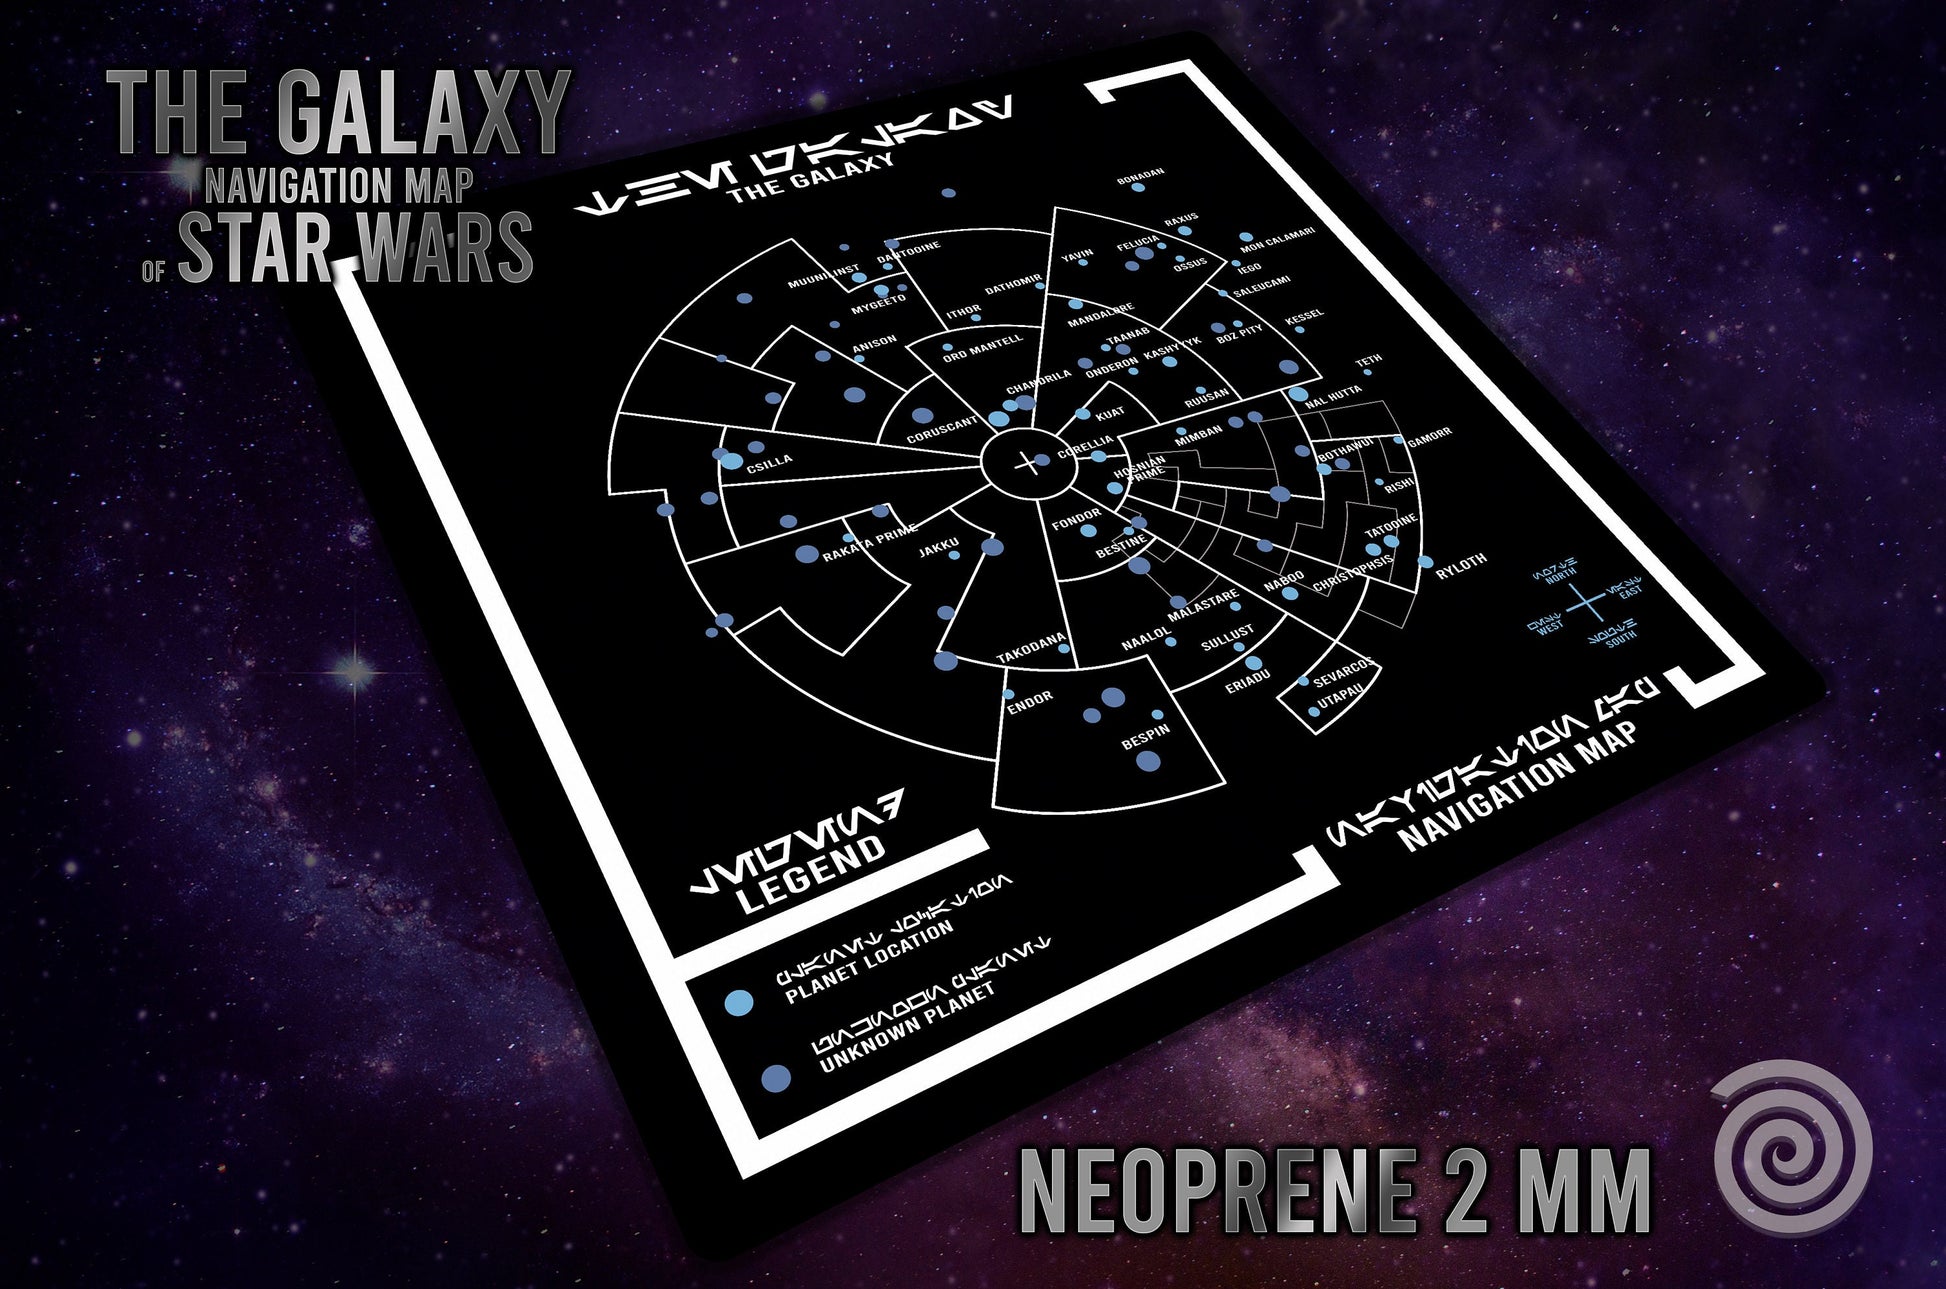 Tapete con el mapa de navegación de la Galaxia ( basado en Star Wars / Era de la Rebellion)